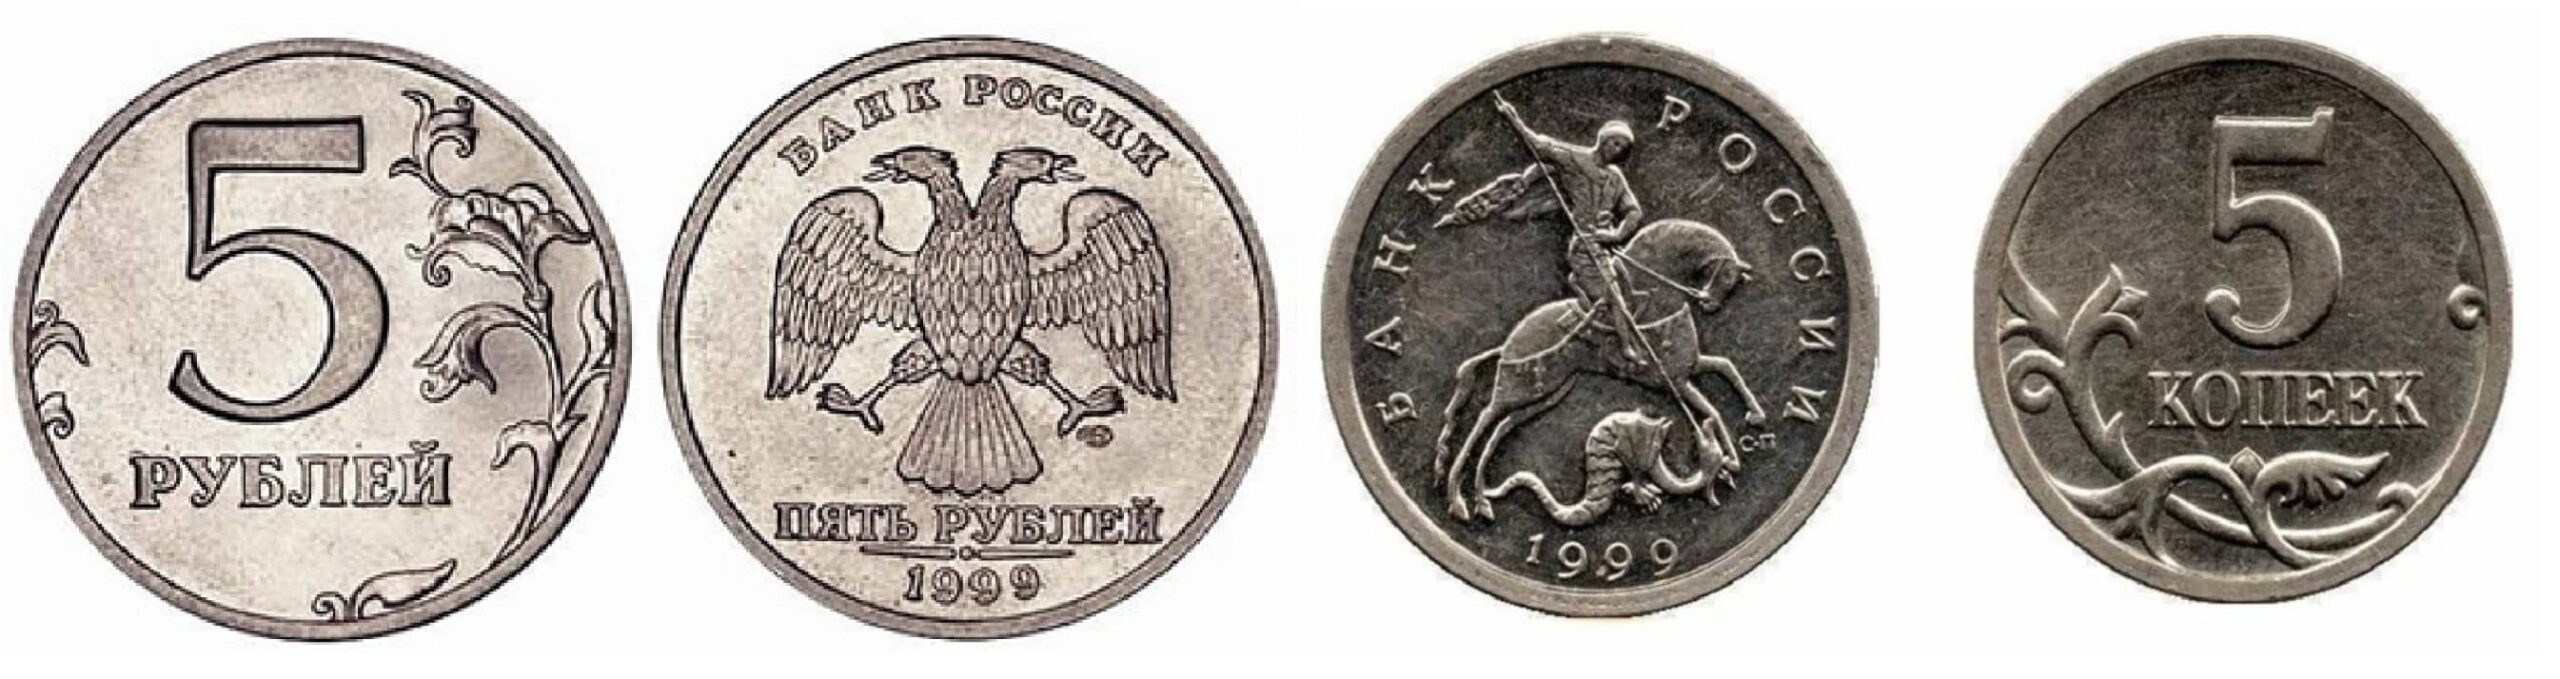 5 Копеек 1999. Привидение монета. Польша 2 гроша 1999 год - герб.